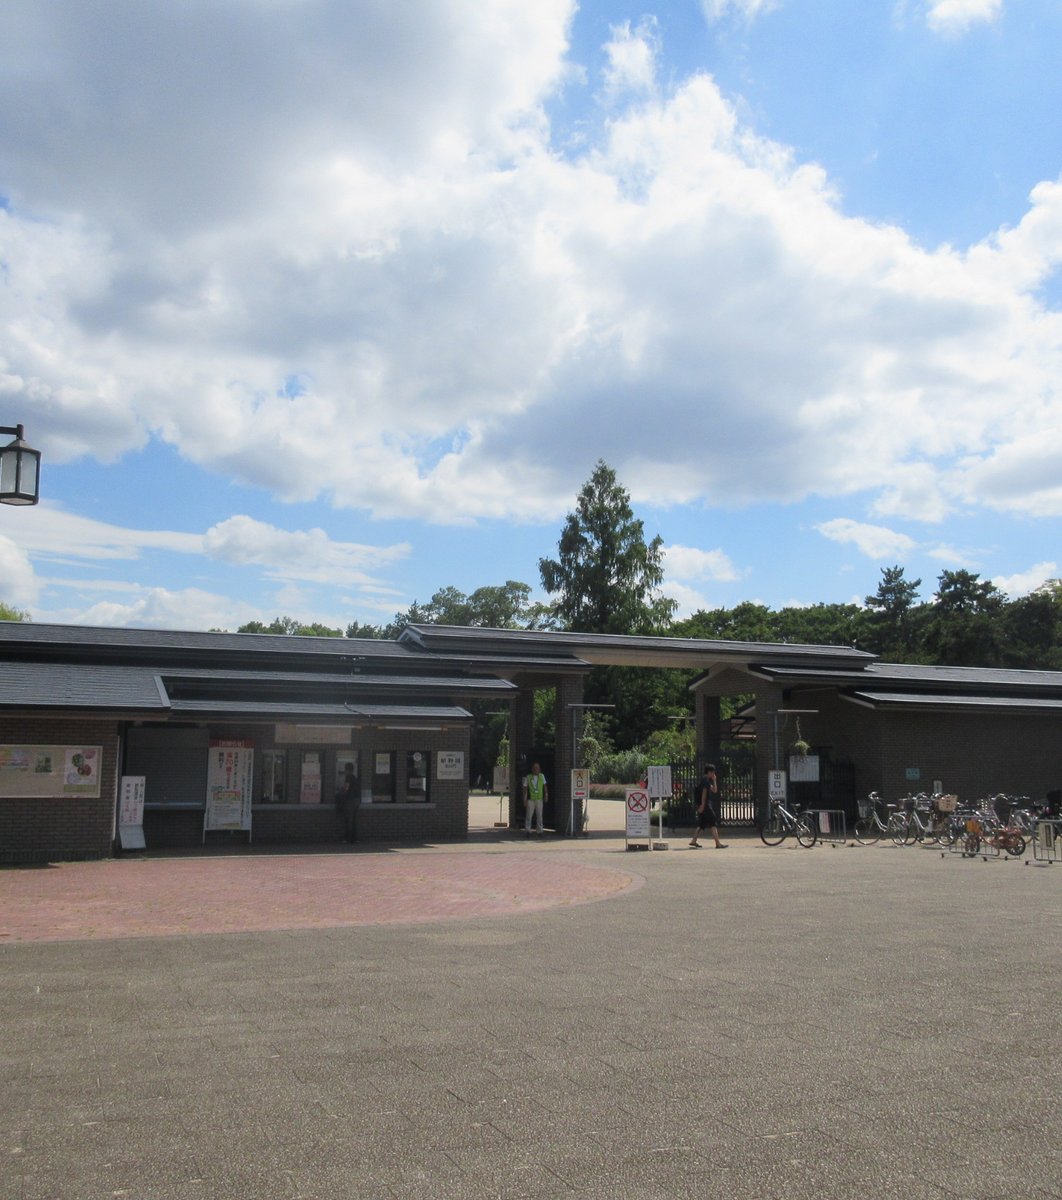 京都でポケモンgo 京都府立植物園はゼニガメの巣 気になる噂を1時間徹底検証 その結果は Playlife プレイライフ